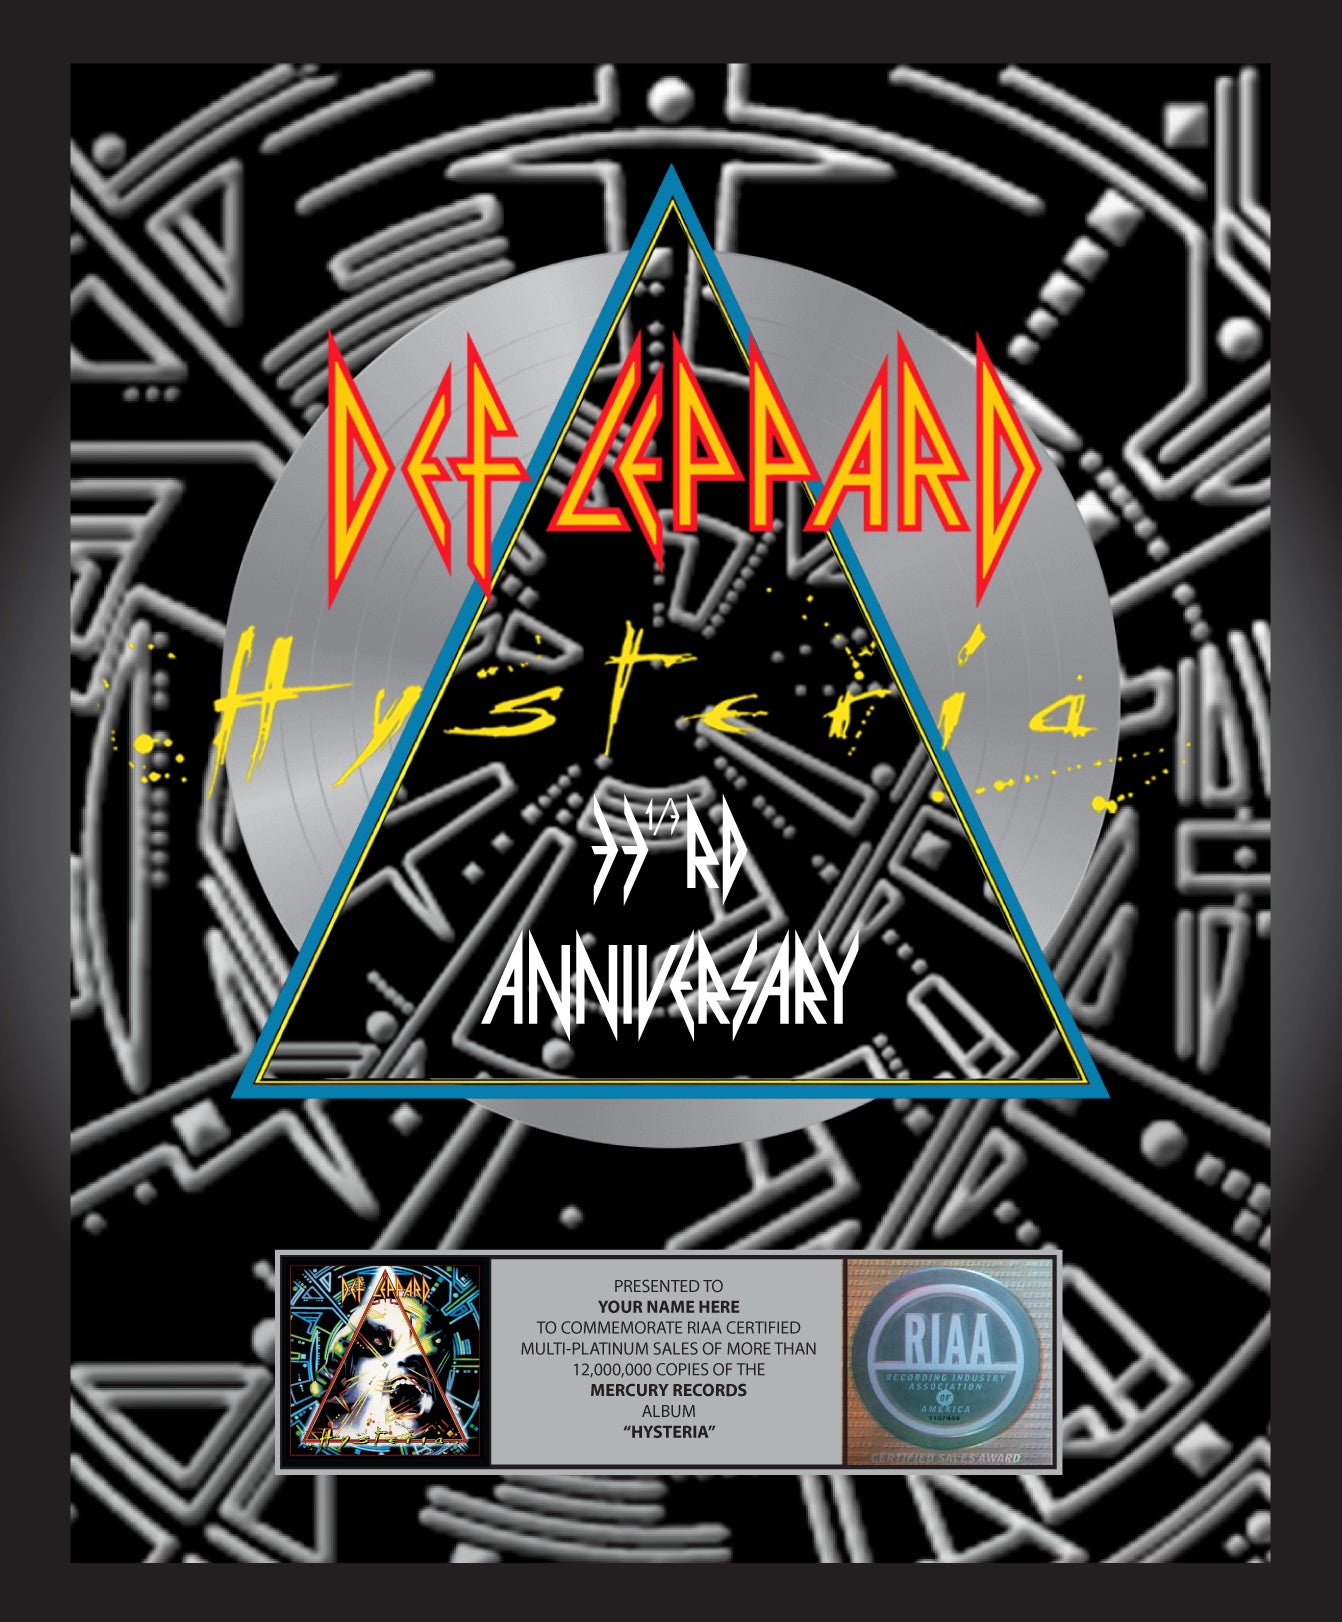 Hysteria 33 1/3 Anniversary Commemorative Platinum Album | Def Vault